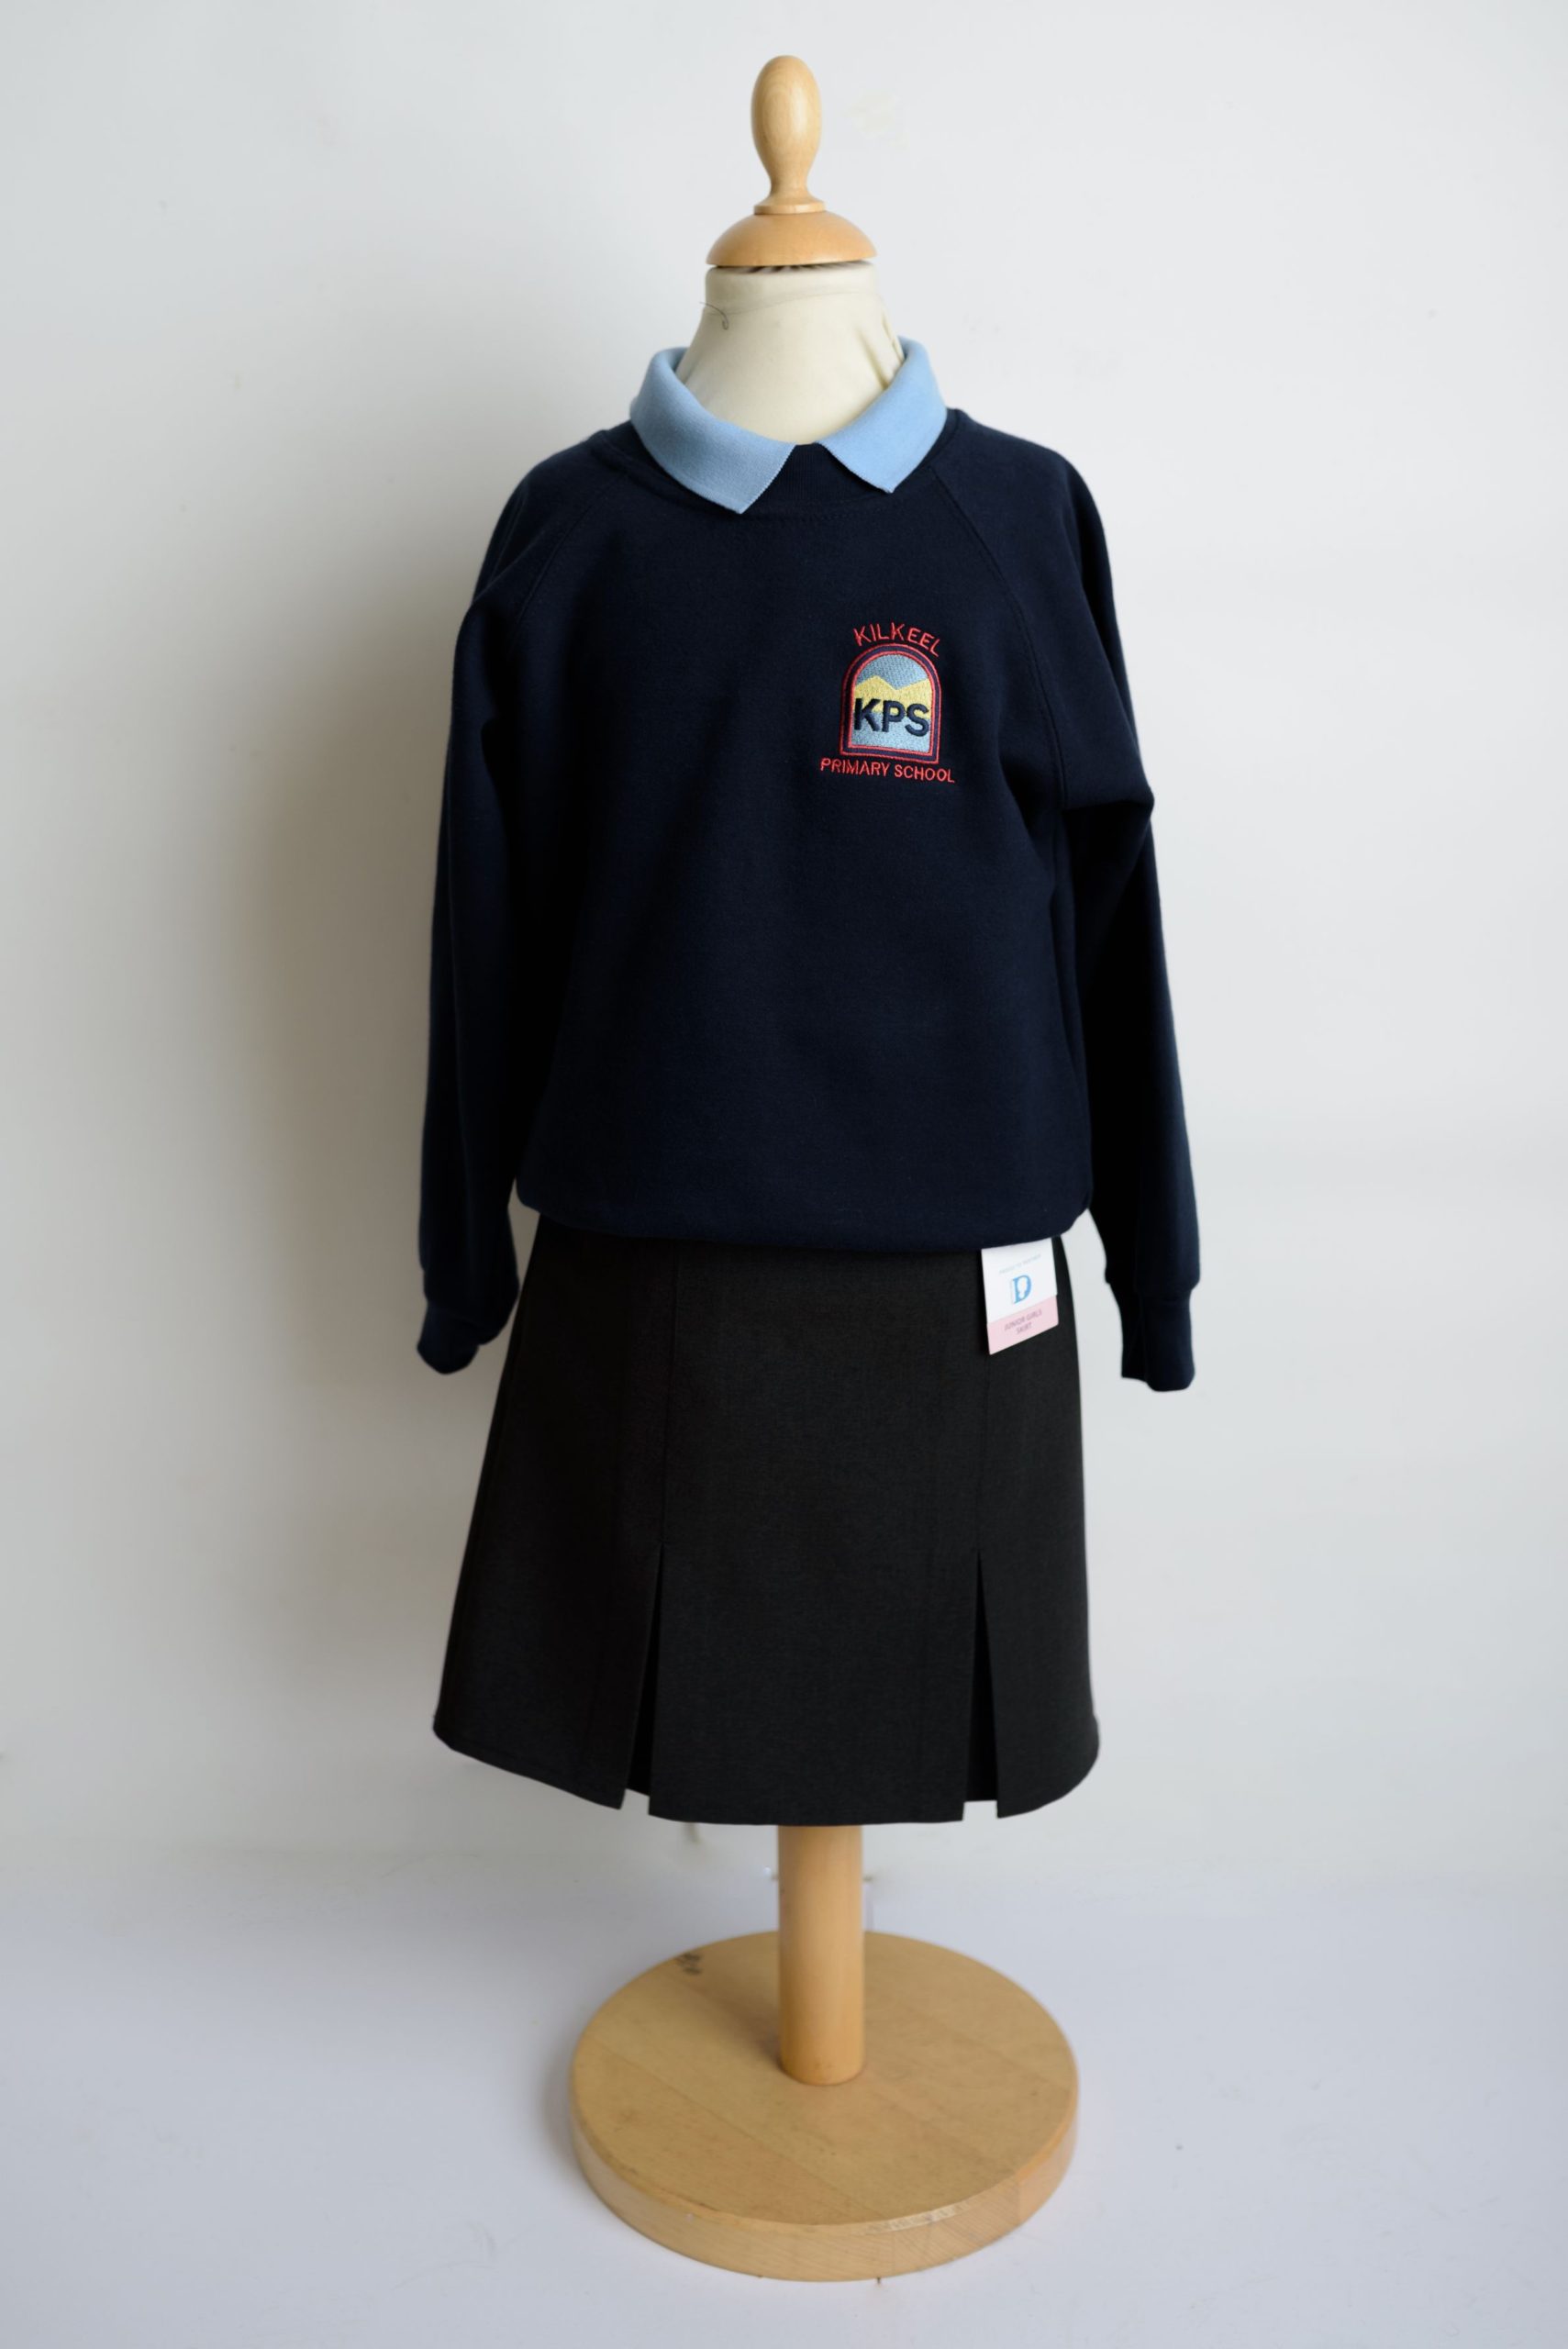 Kilkeel Primary School Girls Uniform